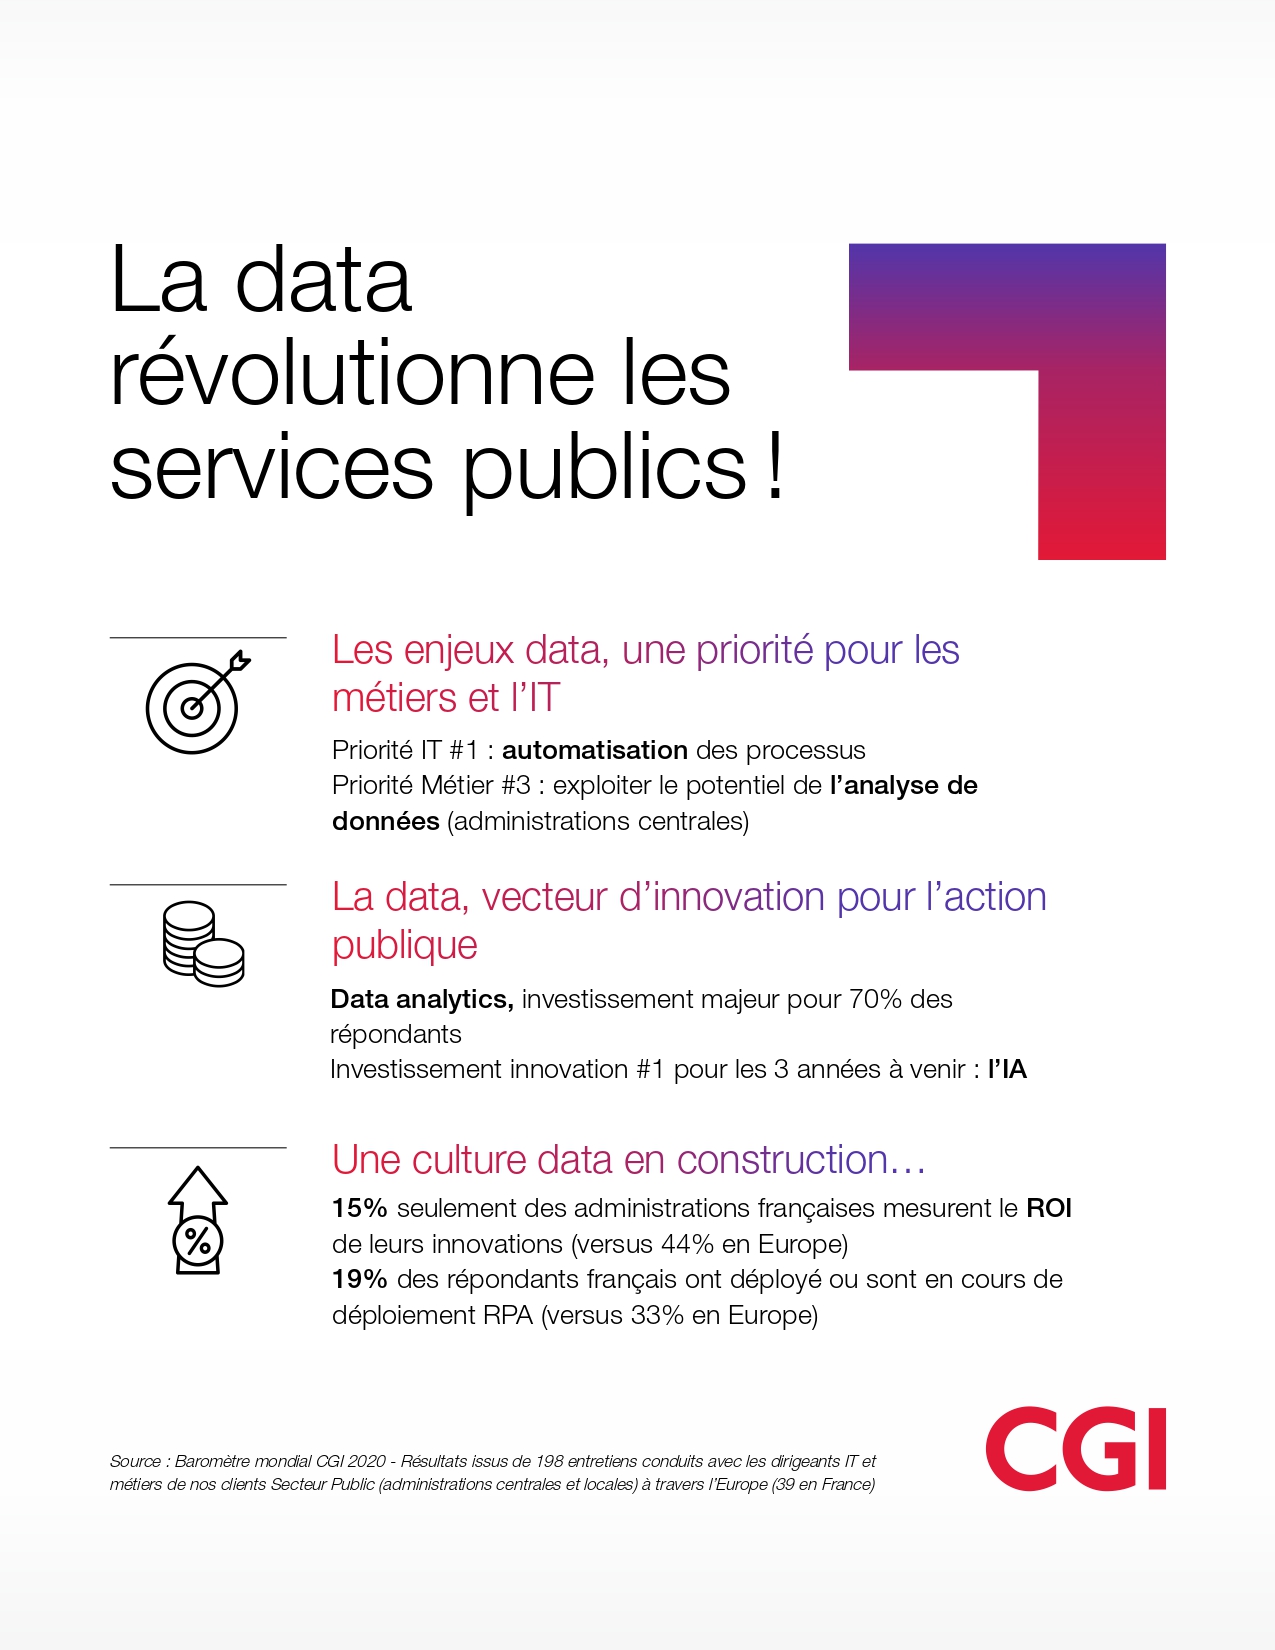 La data révolutionne les services publics !